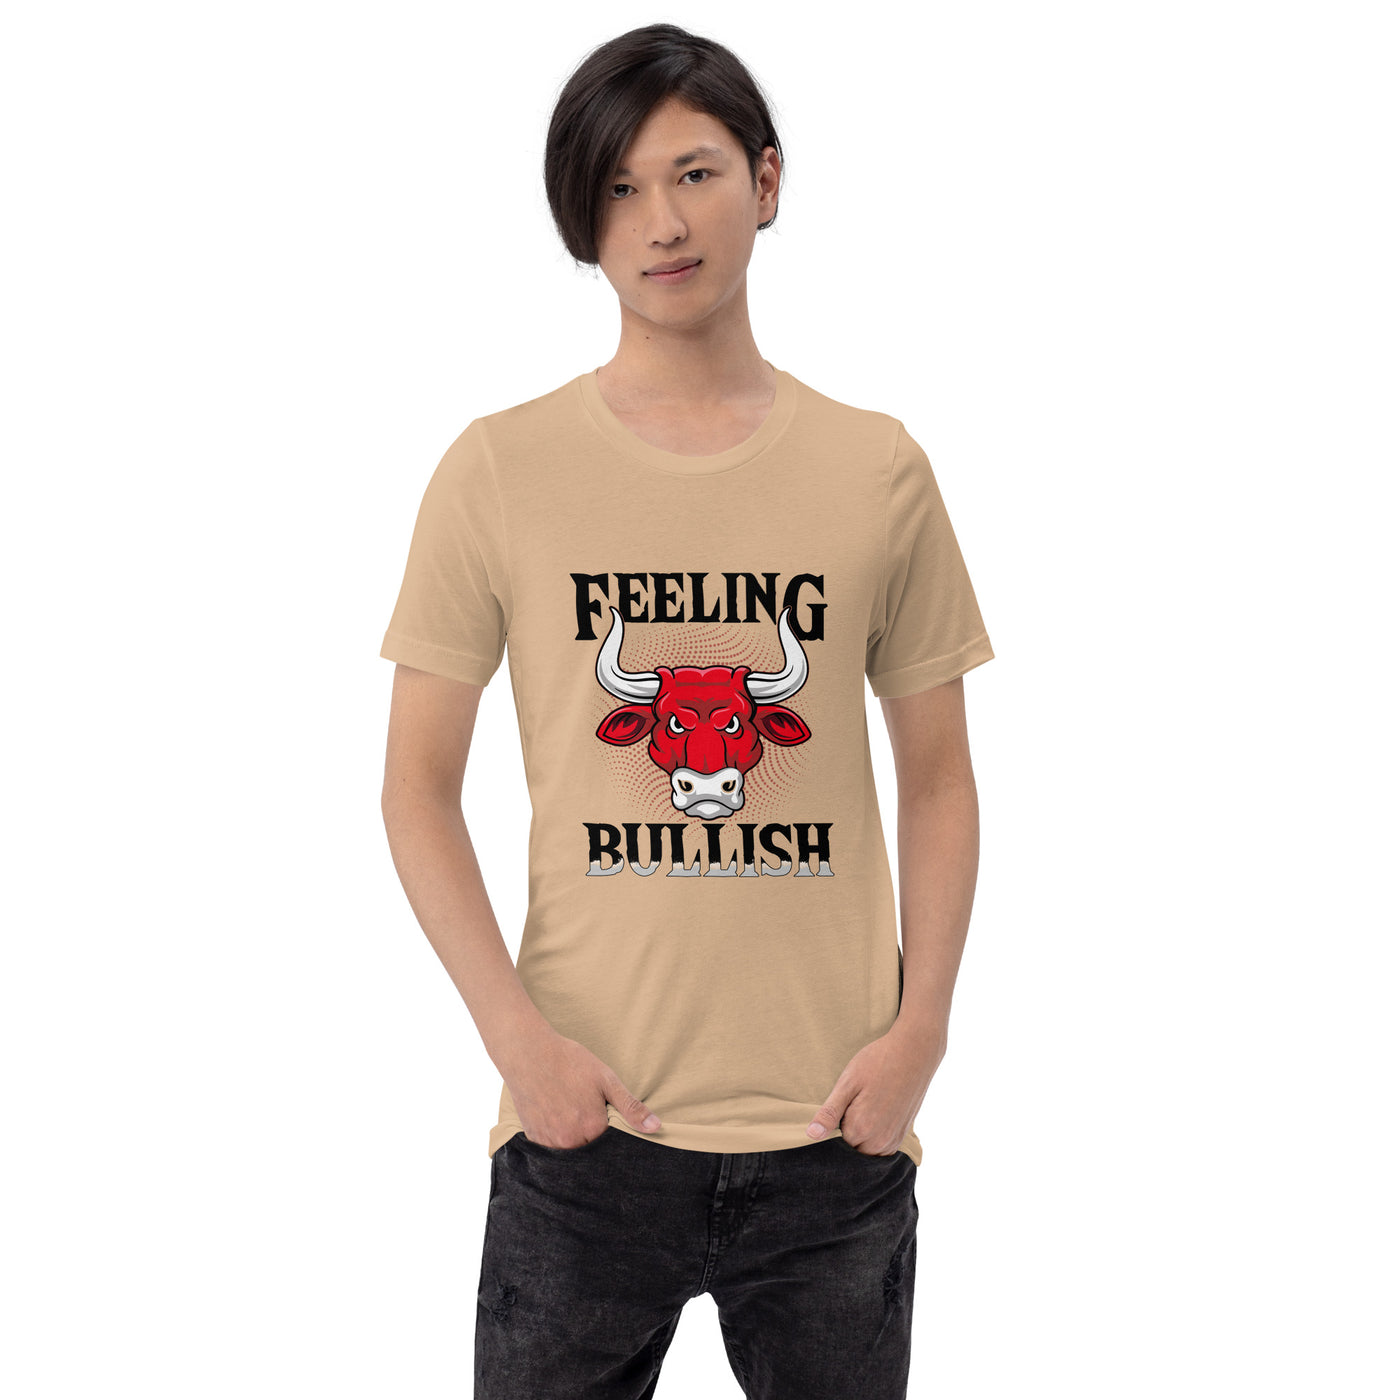 Feeling Bullish in Dark Text - Unisex t-shirt